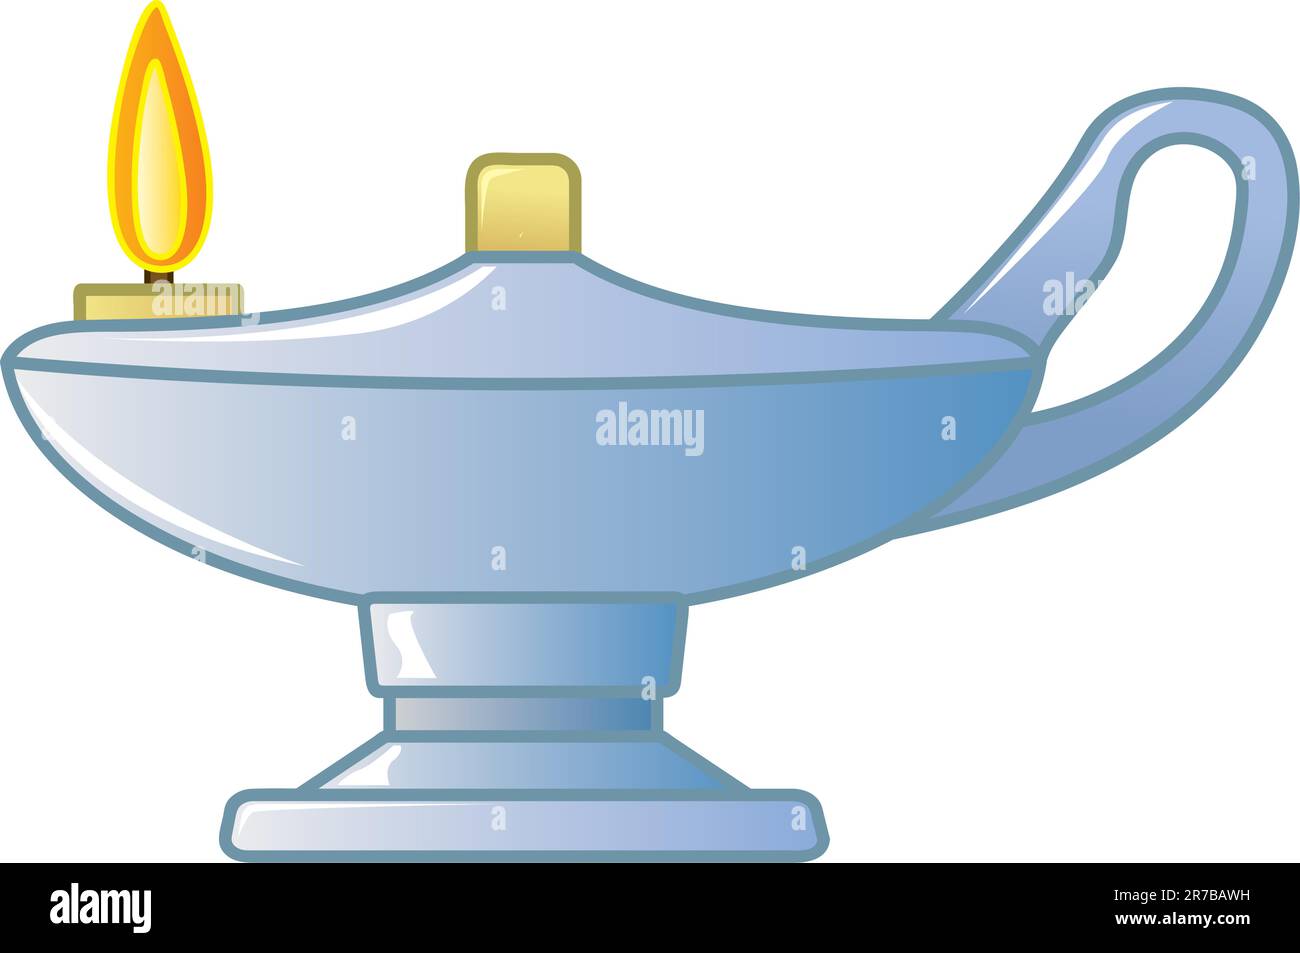 La lampe à huile Florence Nightingale, symbole de la profession infirmière  Image Vectorielle Stock - Alamy